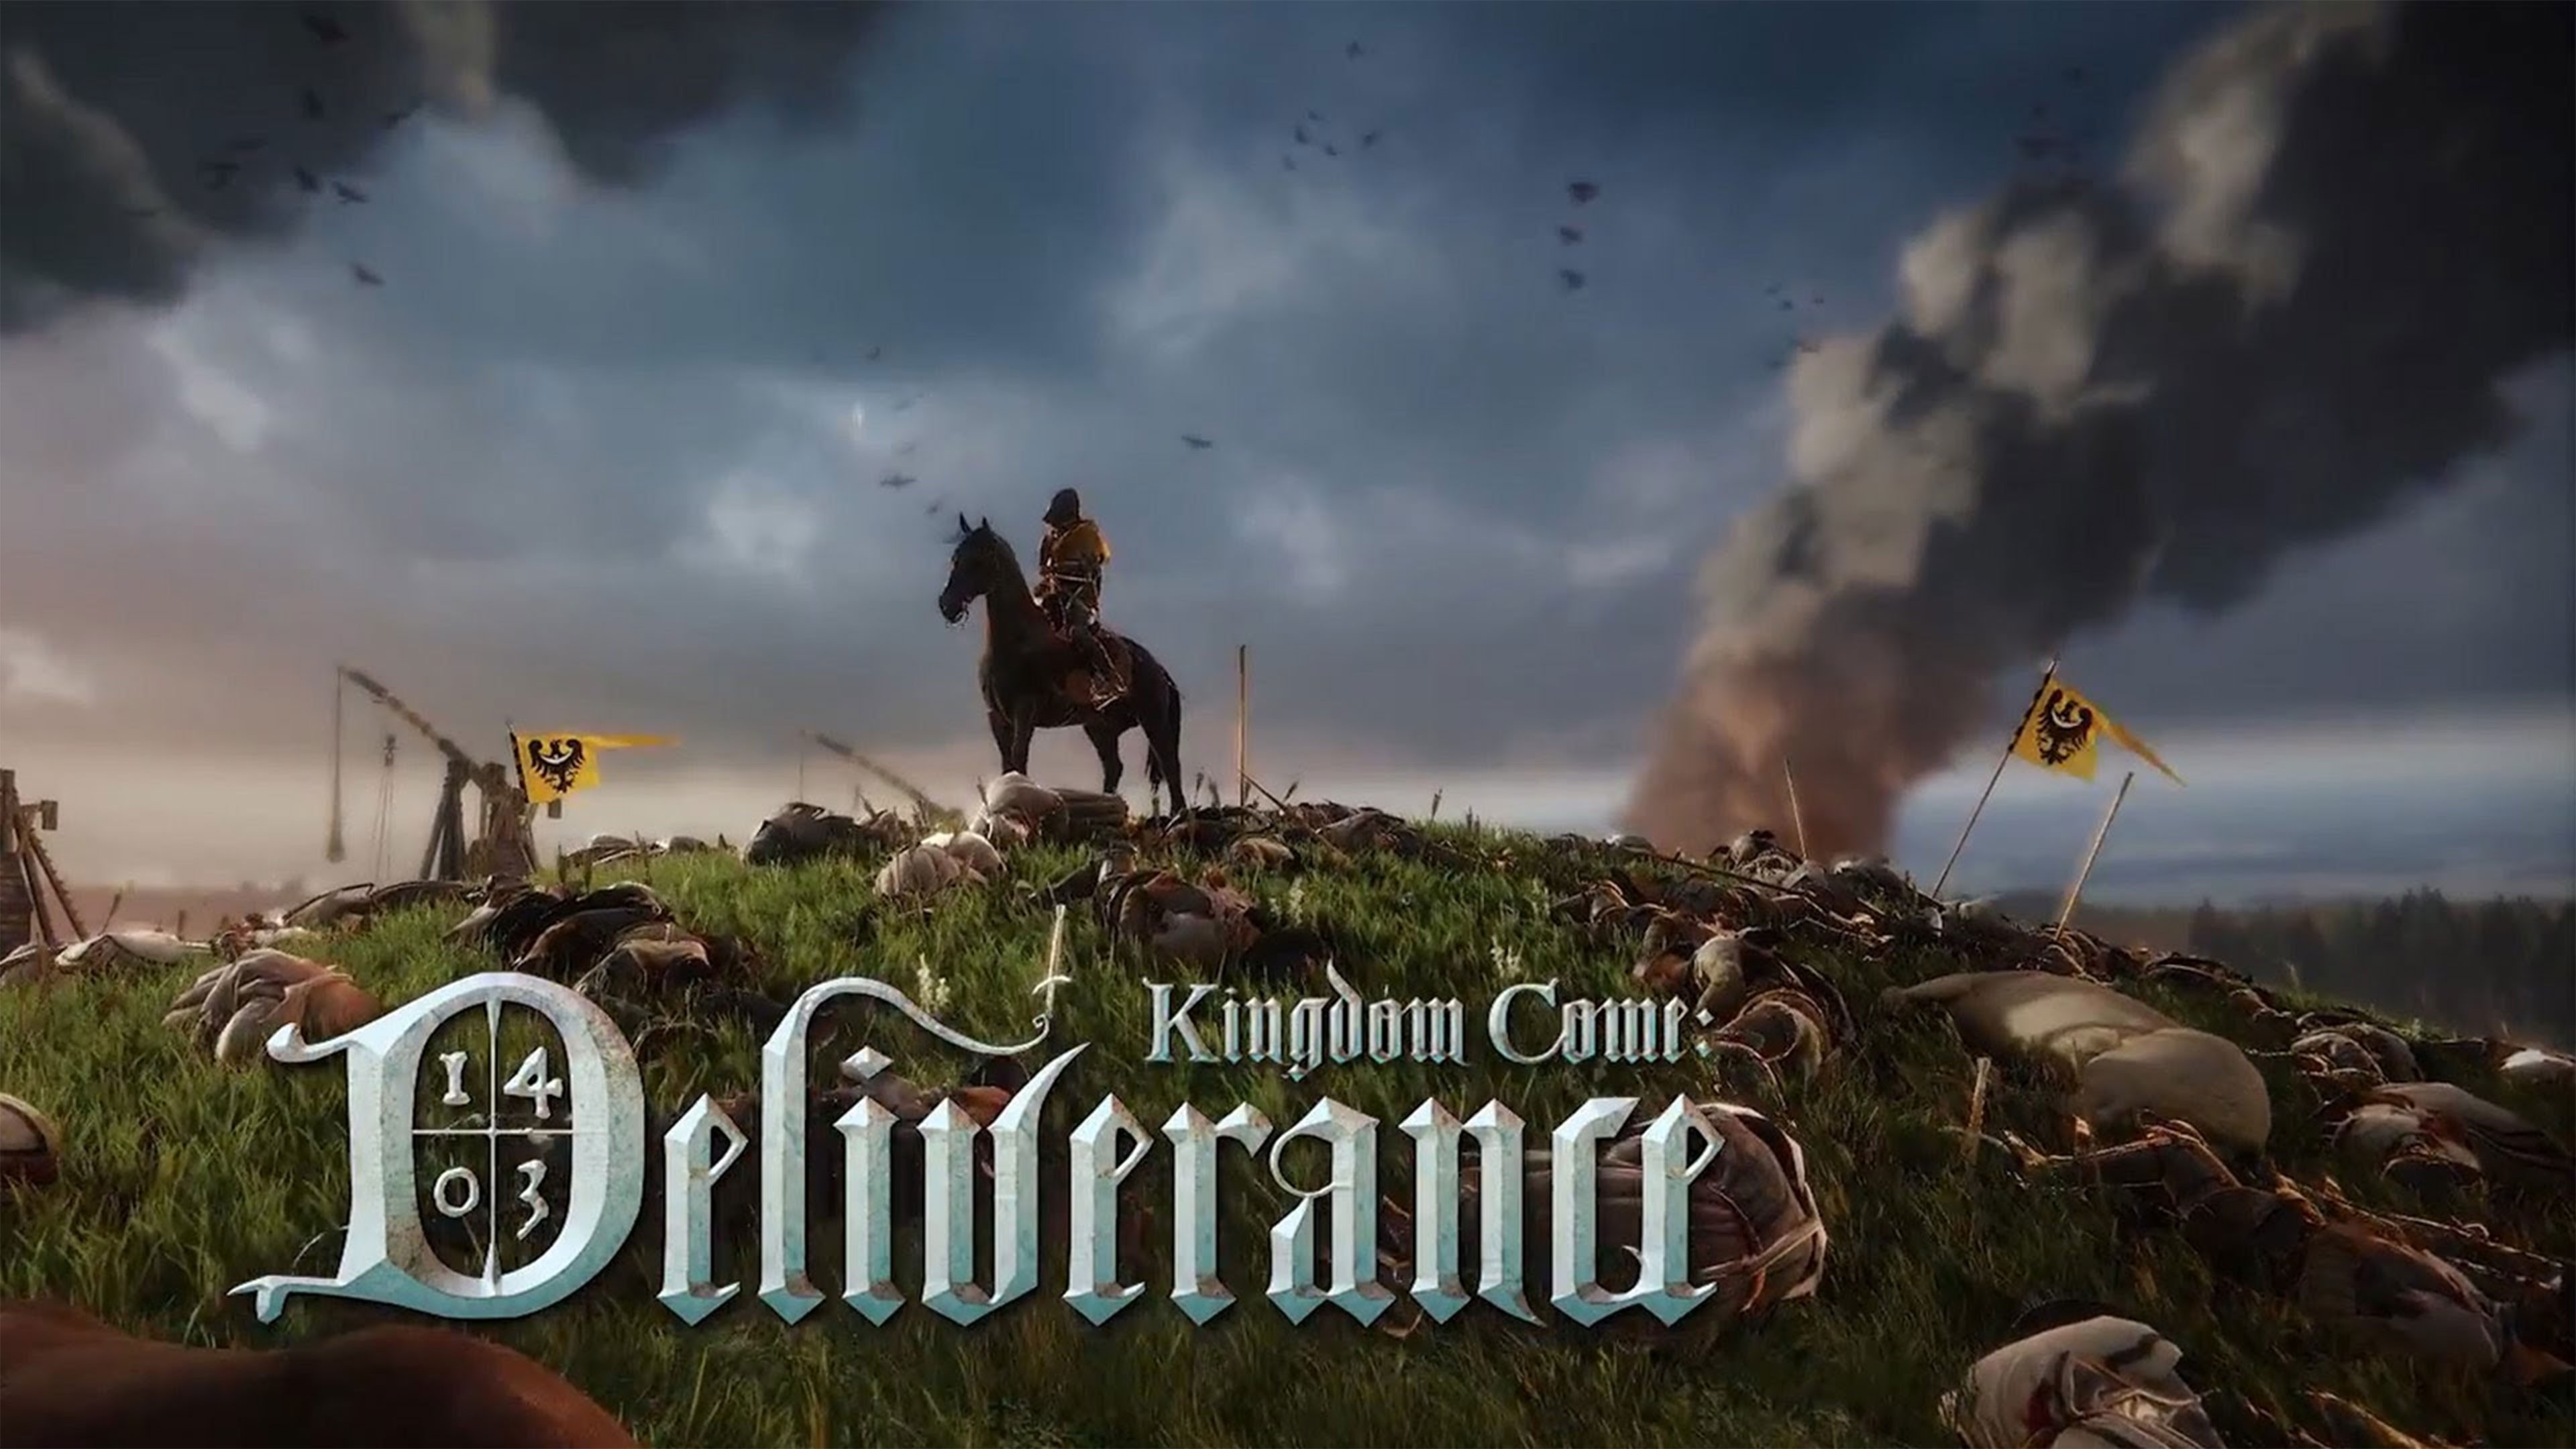 4 game come. Игра Kingdom come: deliverance Постер. Kind of come deliverance. Kingdom come deliverance геймплей.